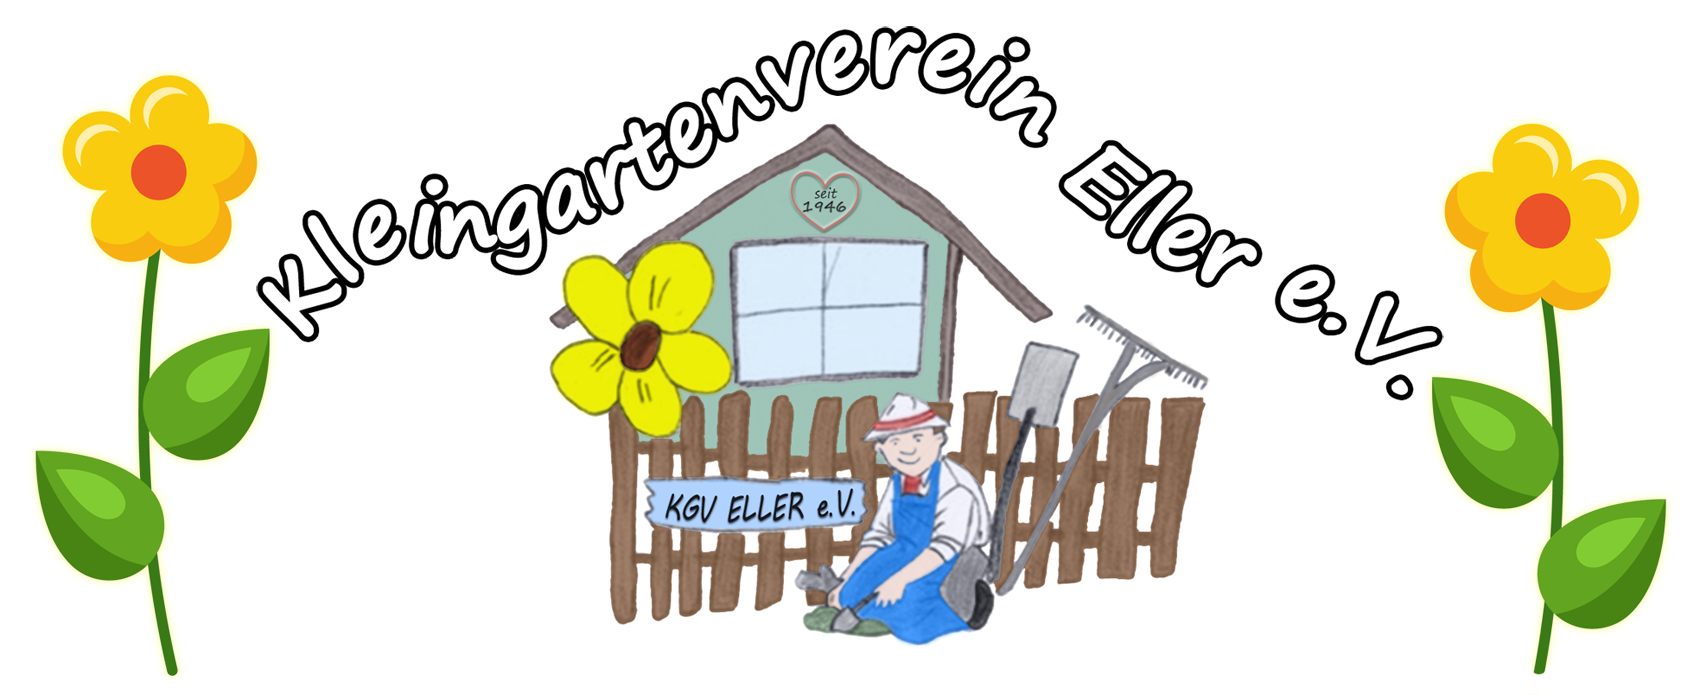 Kleingartenverein Eller e. V.